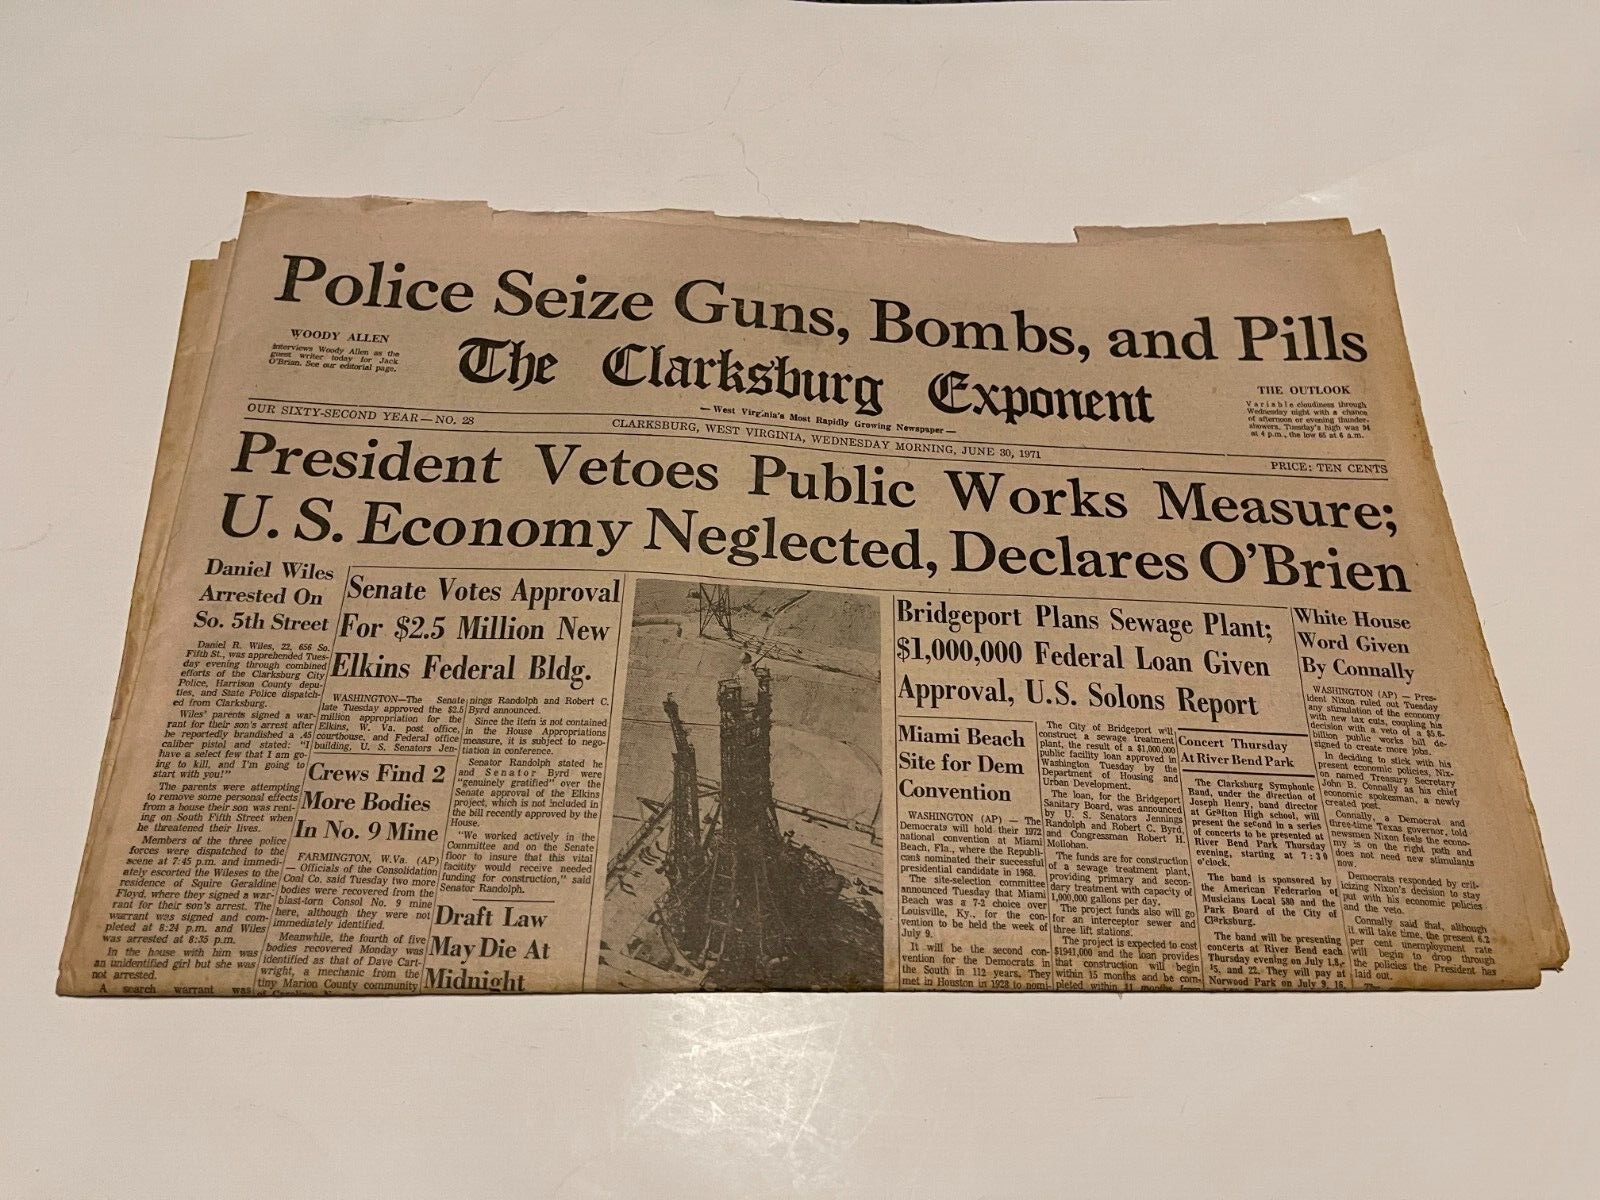 JUNE 30 1971 CLARKSBURG west virginia newspaper-WOODY ALLEN INTERVIEW